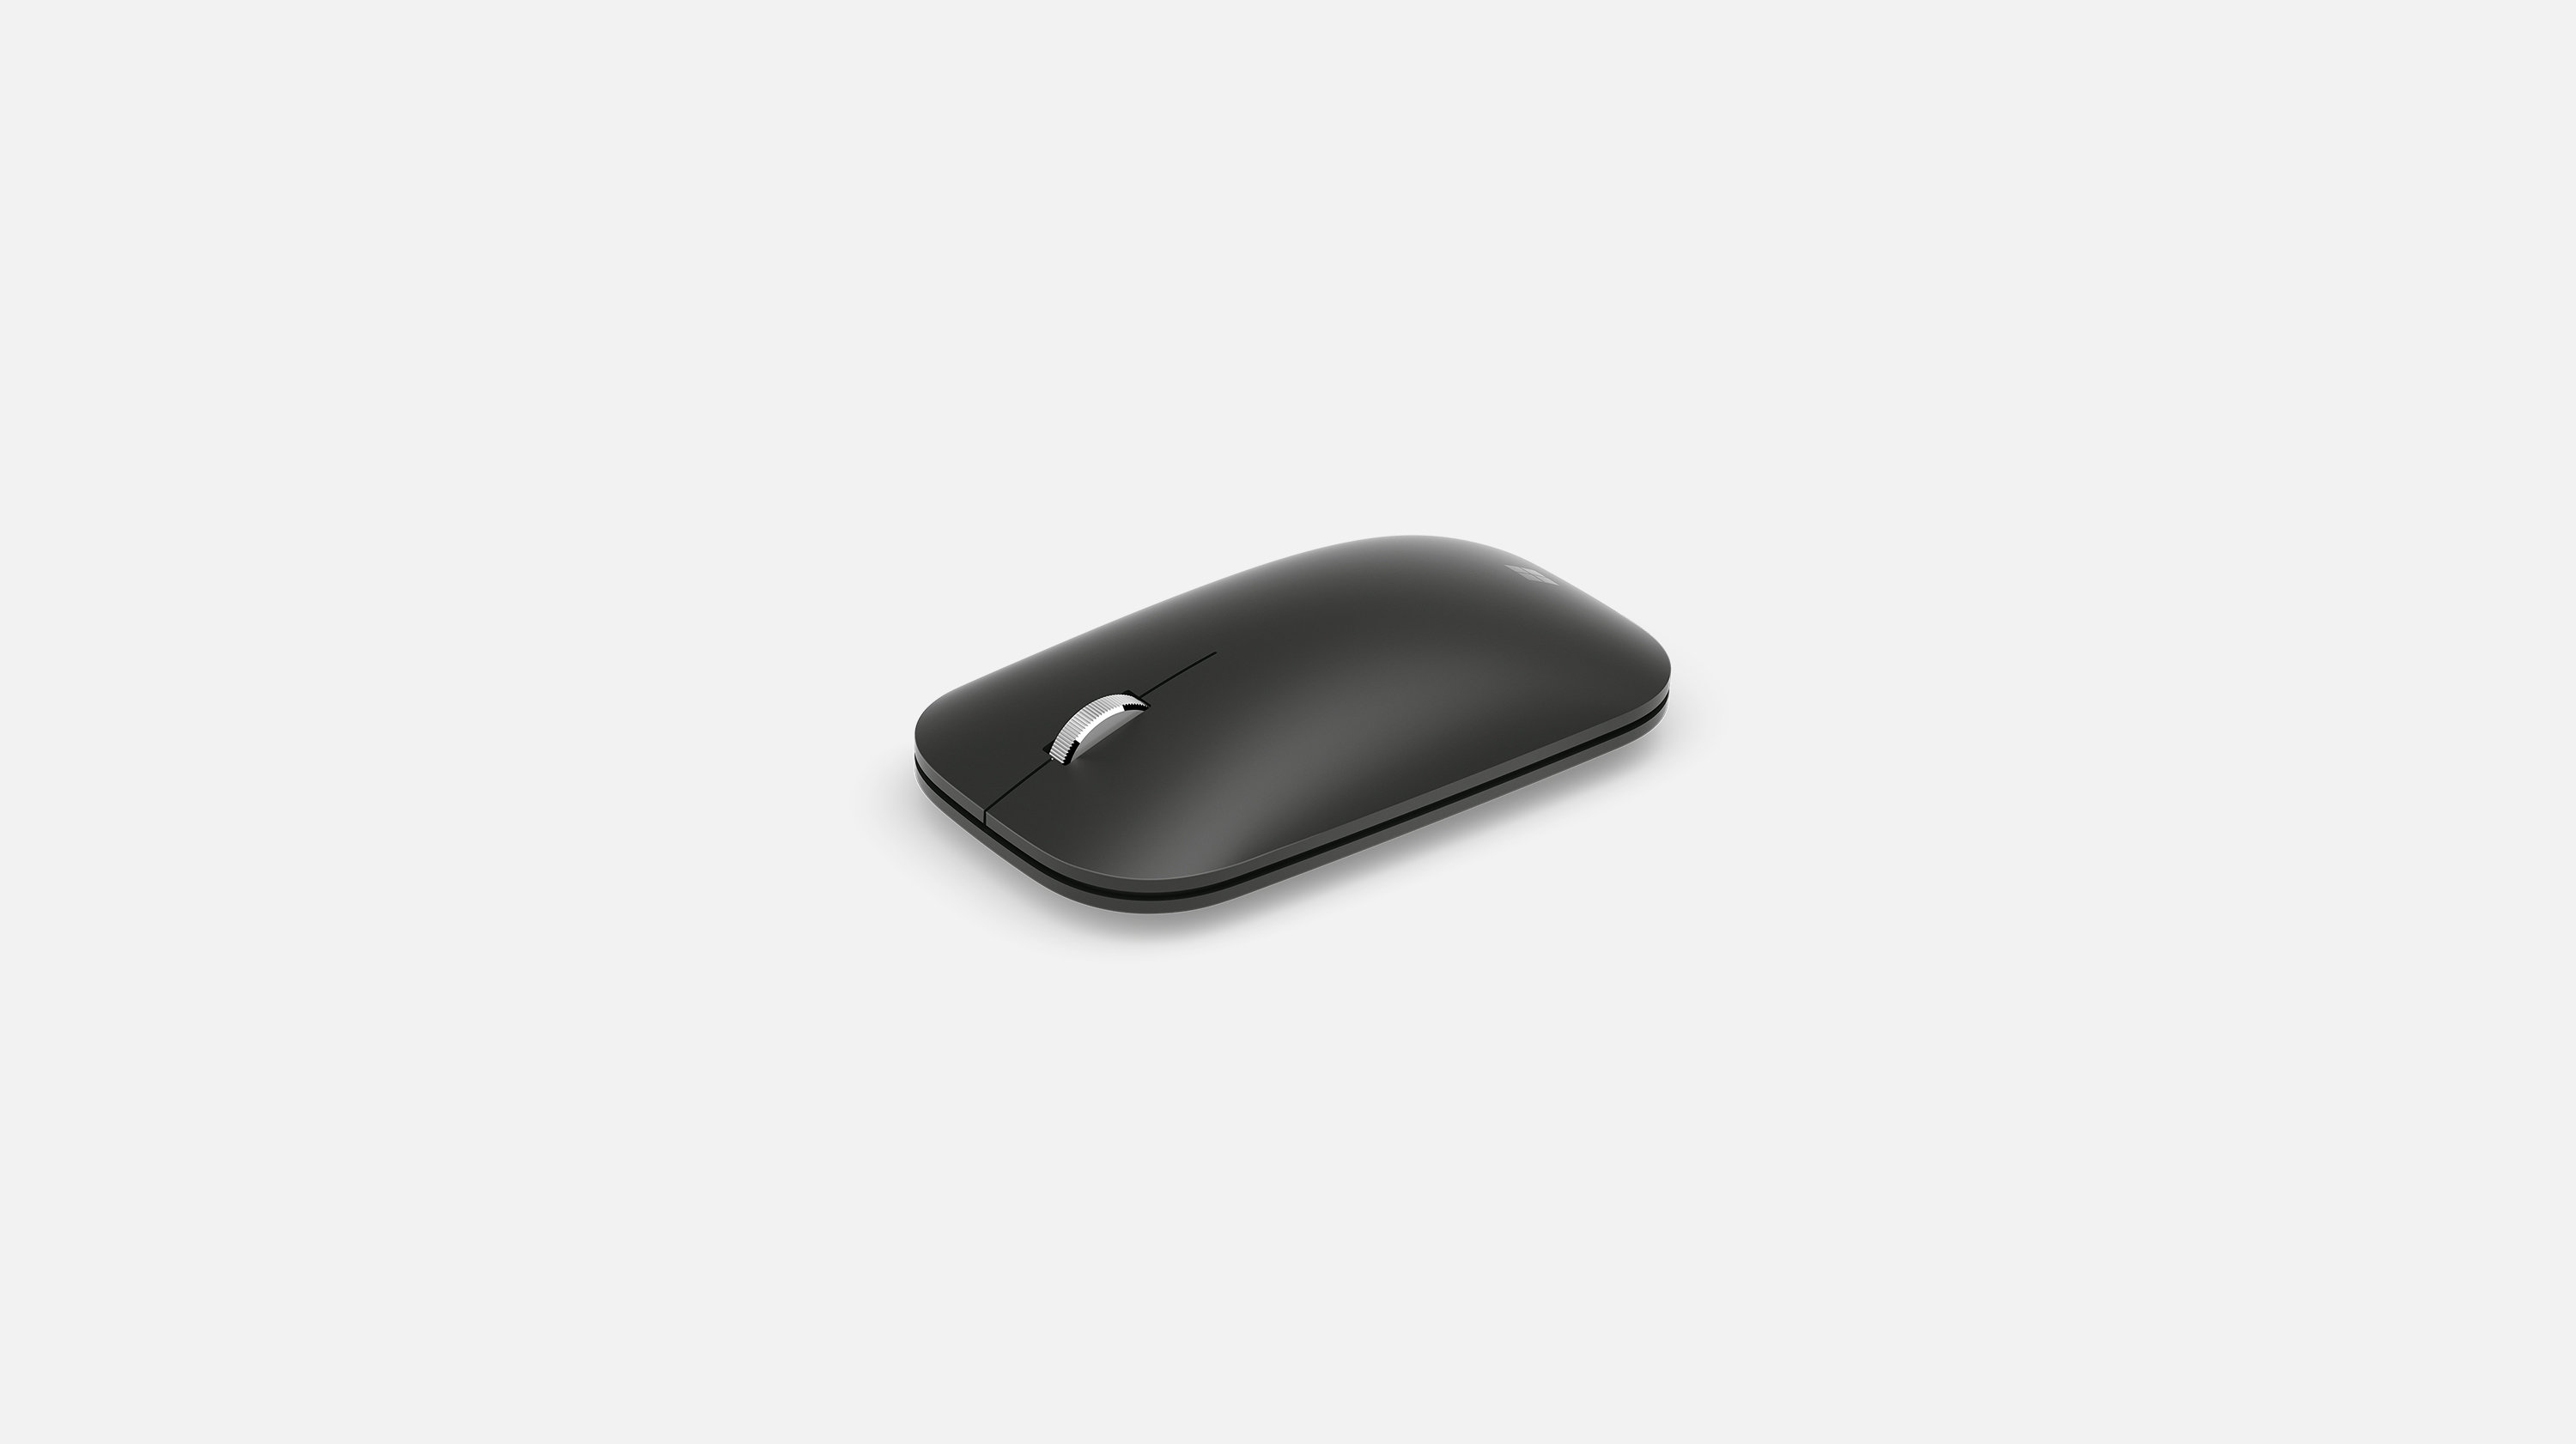 Microsoft Modern Mobile Mouse: Ansicht von oben mit Mausrad und gewölbter Form.